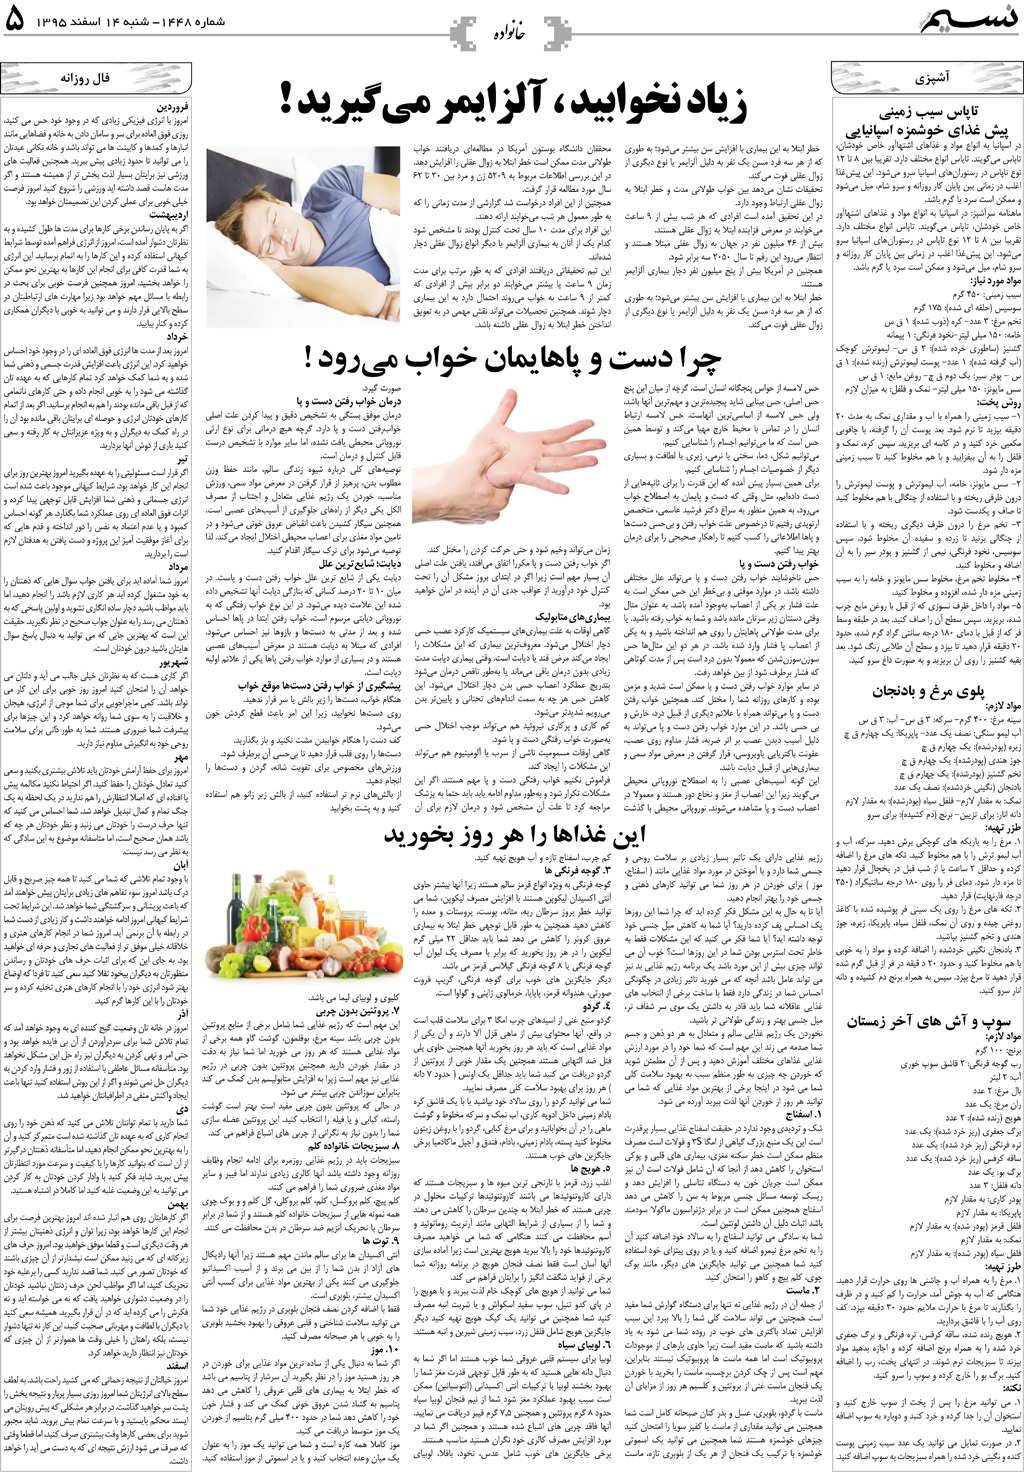 صفحه خانواده روزنامه نسیم شماره 1448